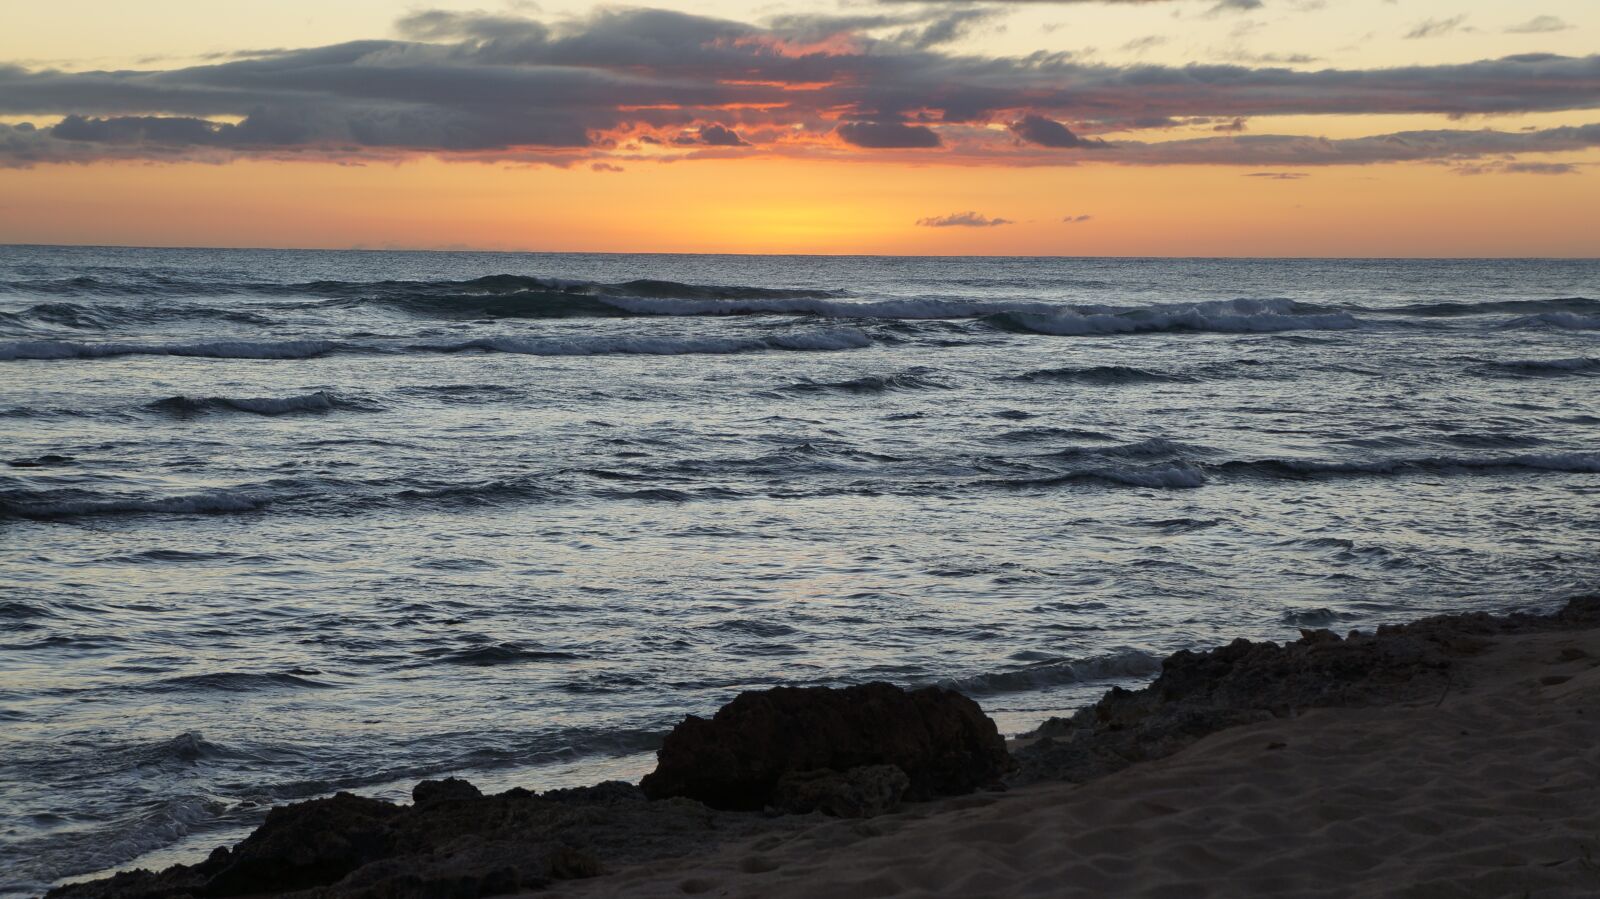 Sony Alpha NEX-5N sample photo. Beach, sunset, sunset beach photography